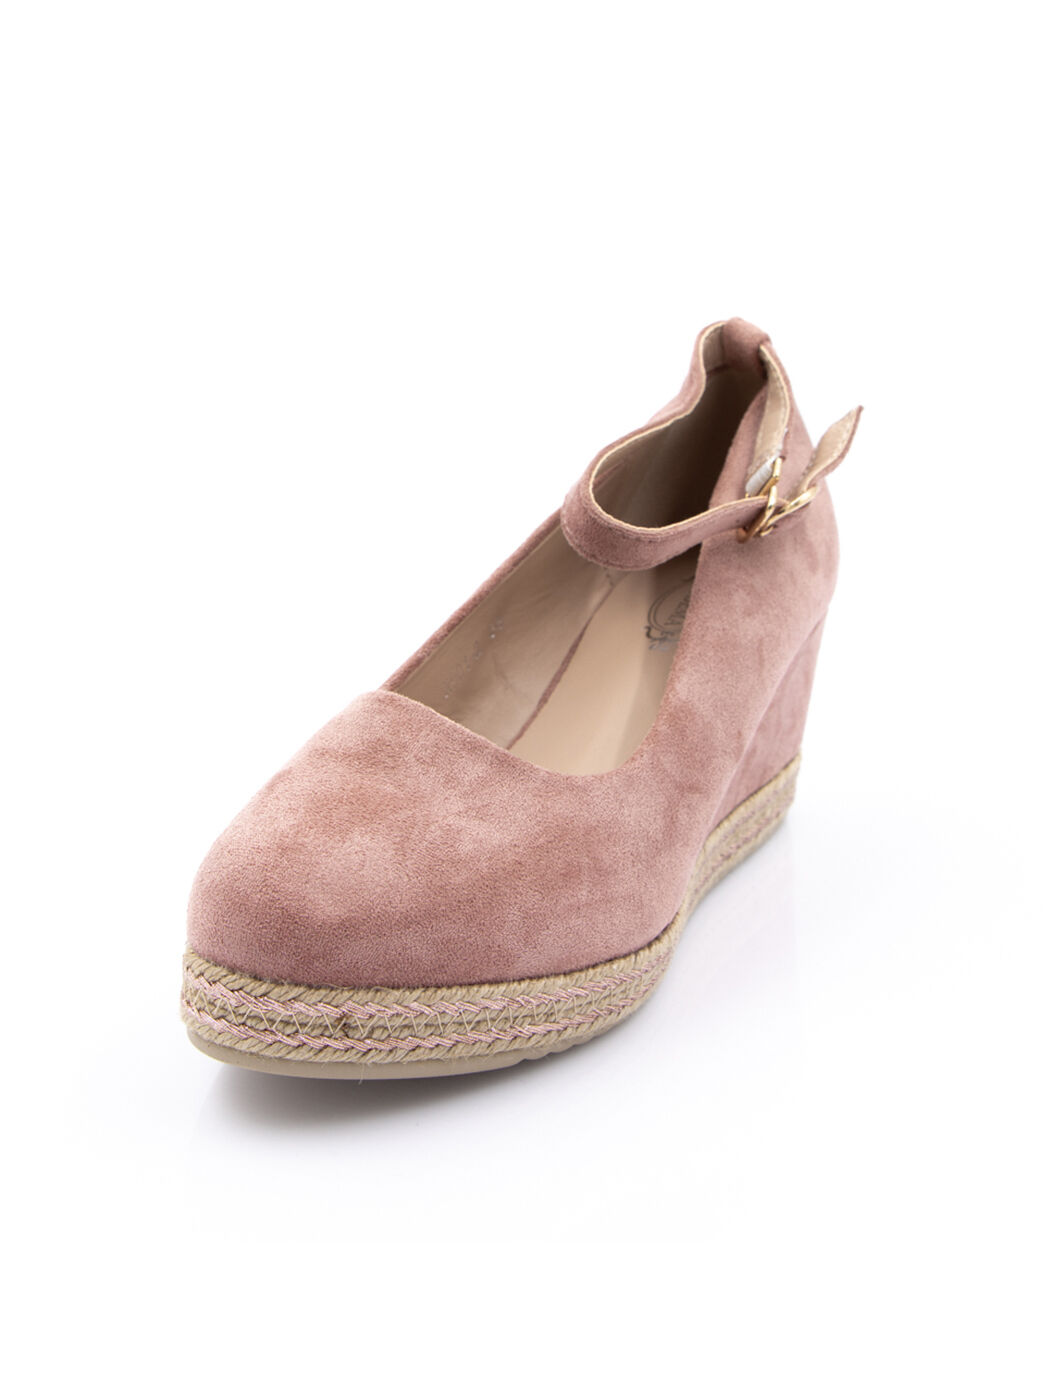 Туфли женские розовые экозамша каблук устойчивый демисезон от производителя 2M вид 0